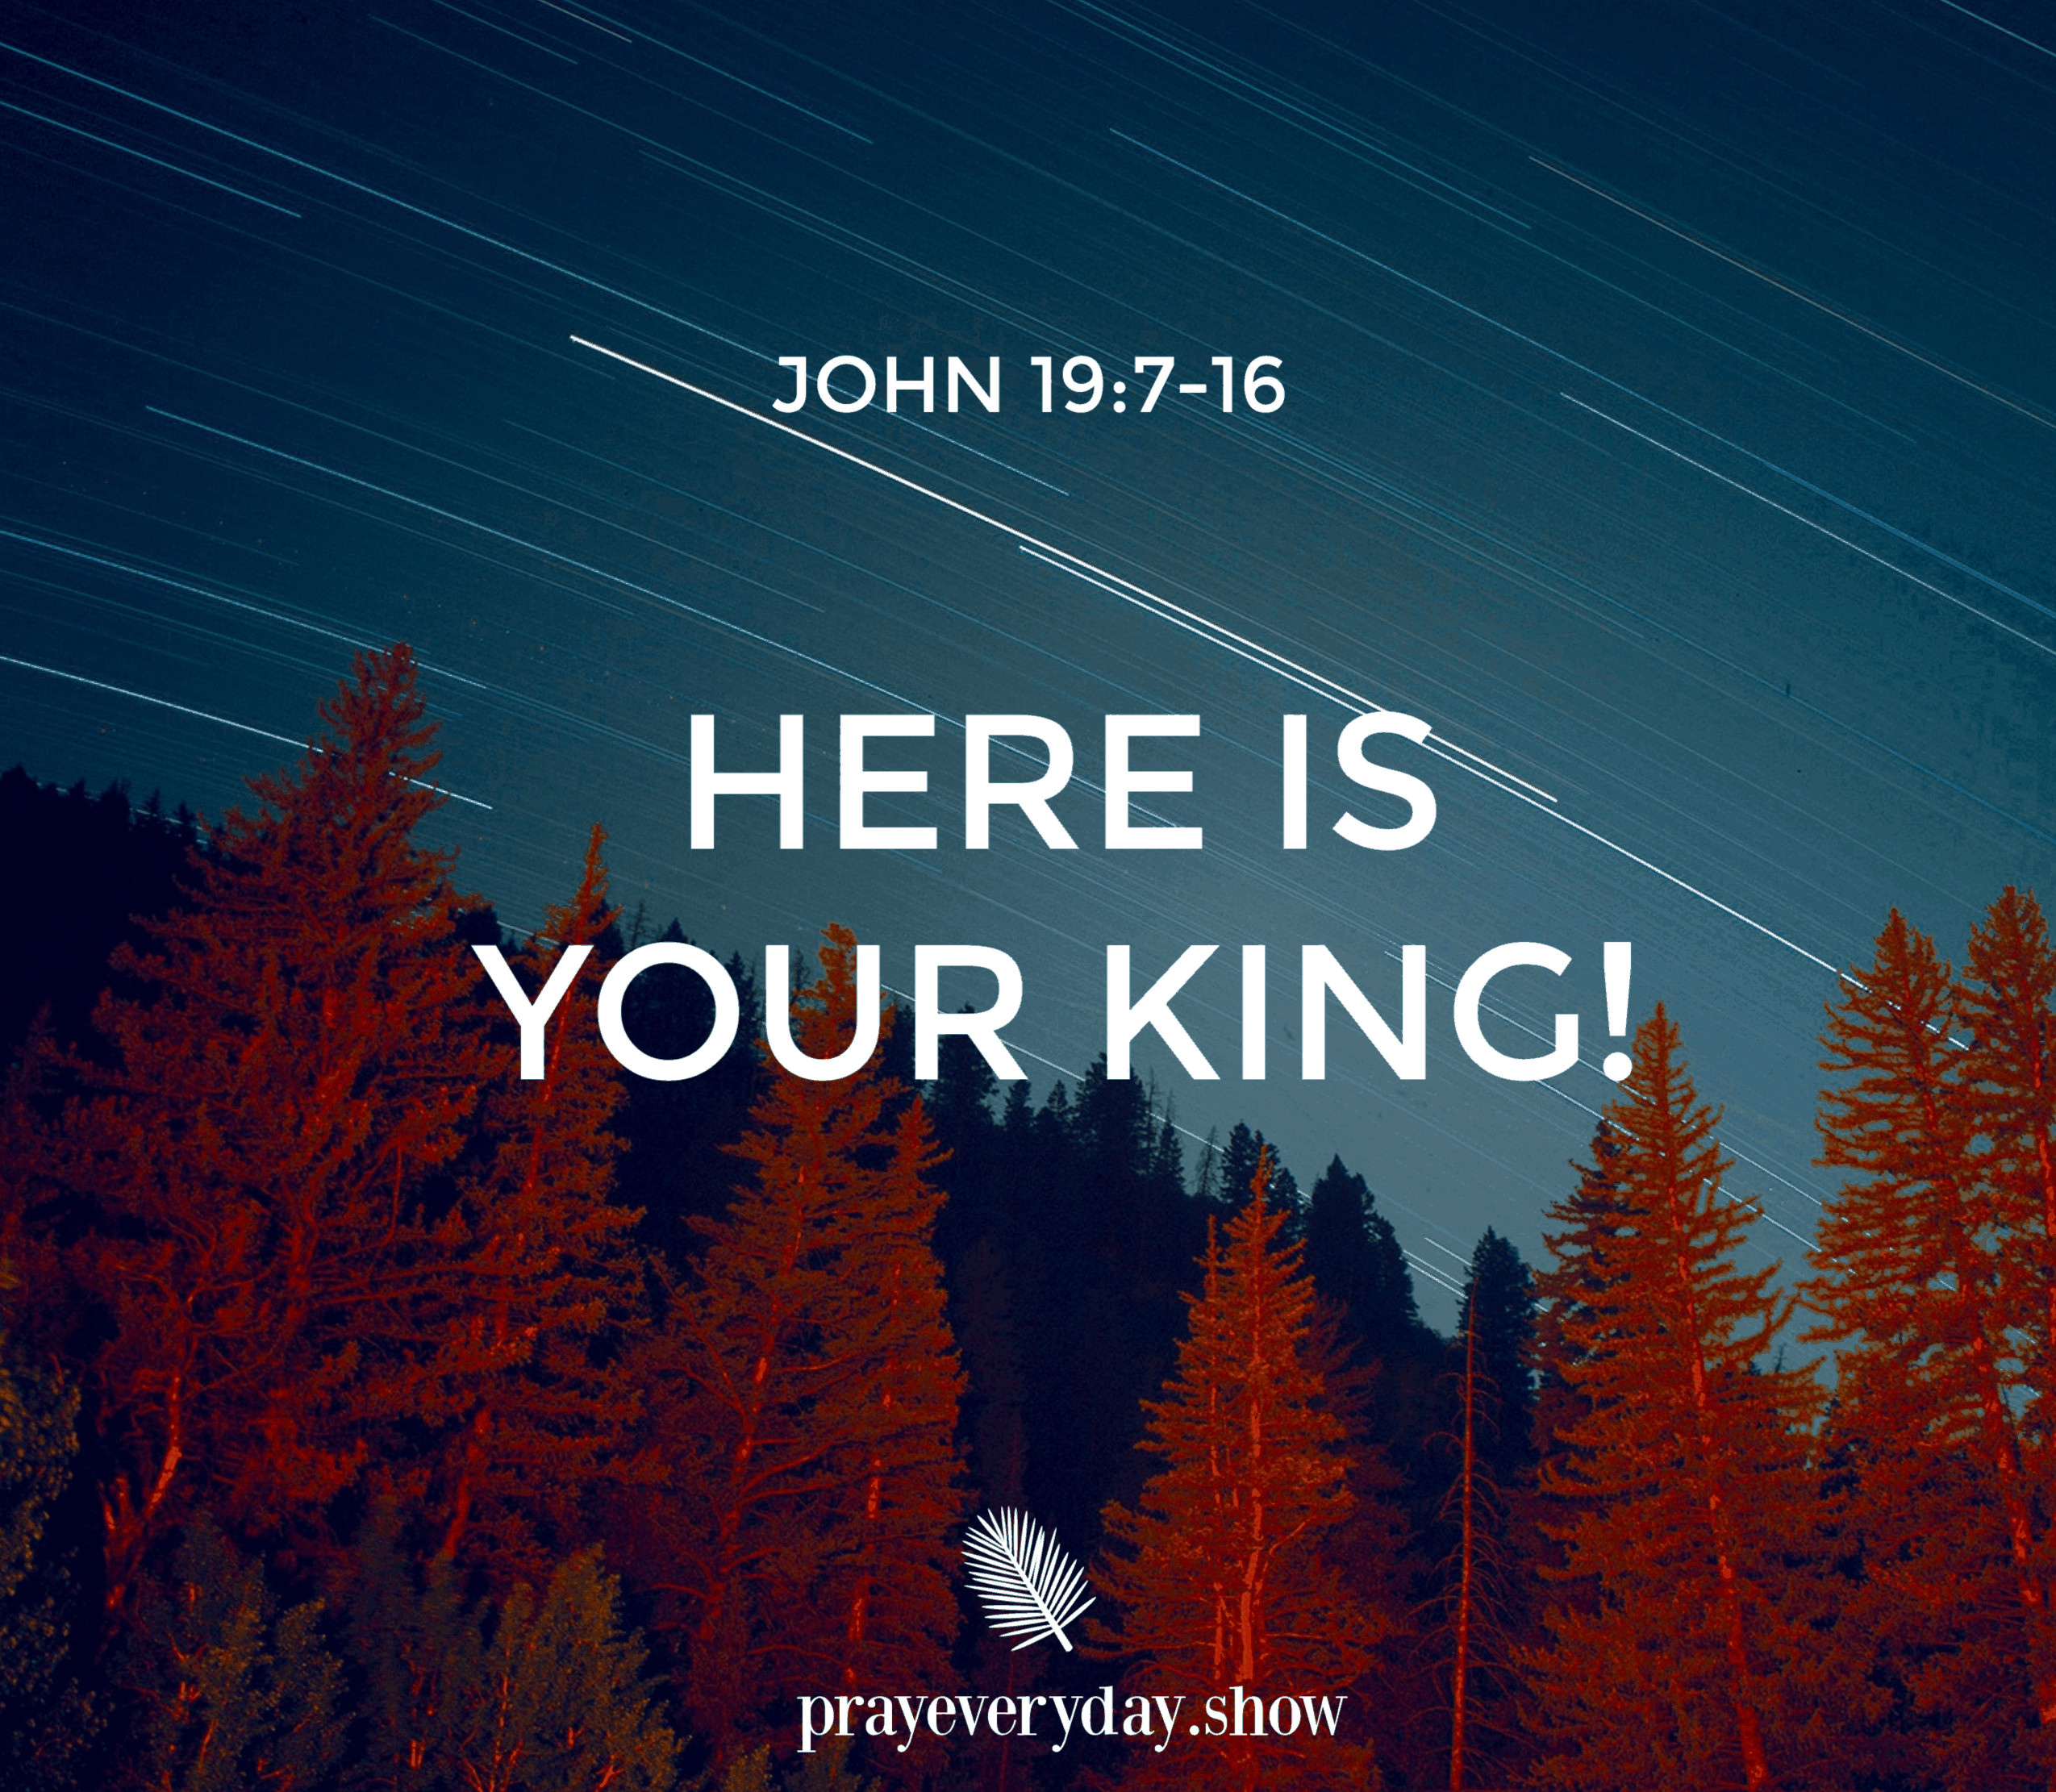 John 19:7-16